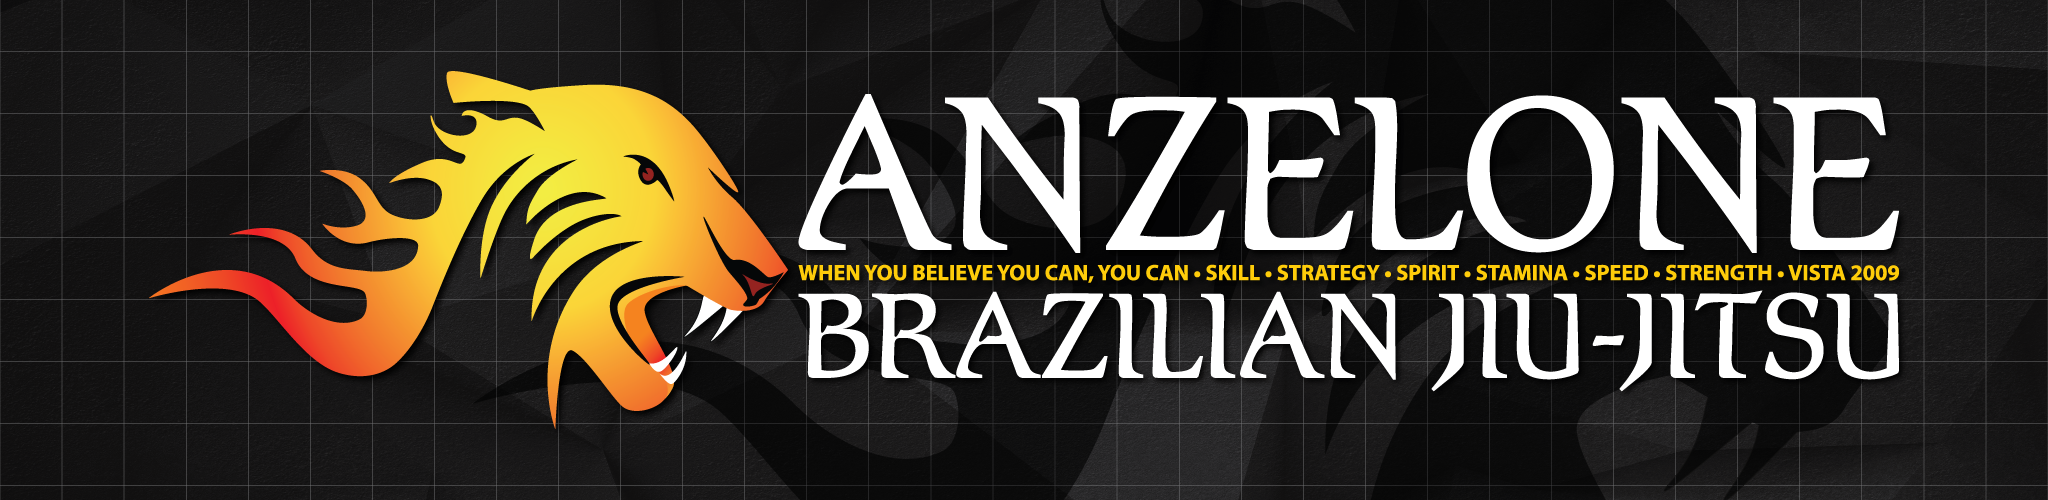 Anzelone Brazilian Jiu-Jitsu